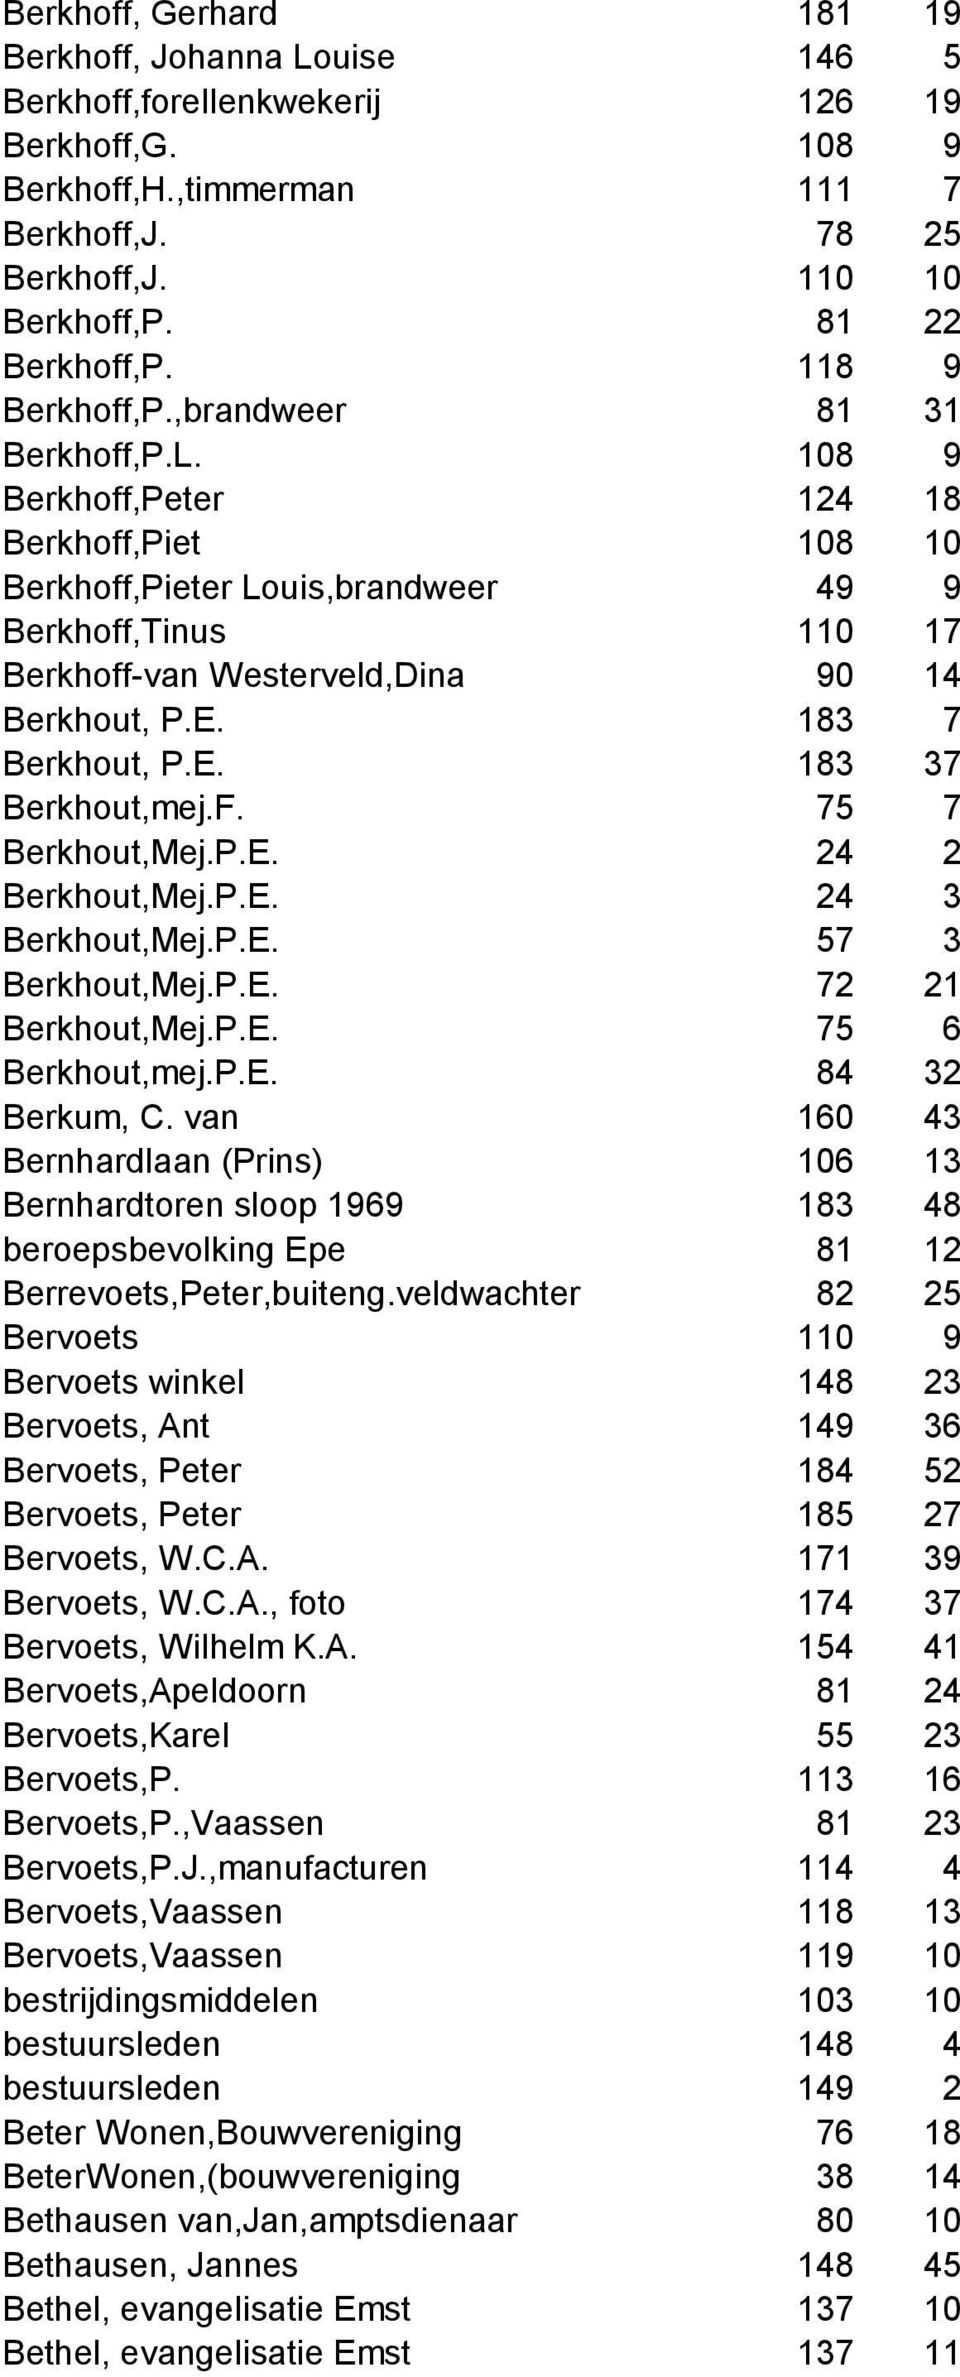 108 9 Berkhoff,Peter 124 18 Berkhoff,Piet 108 10 Berkhoff,Pieter Louis,brandweer 49 9 Berkhoff,Tinus 110 17 Berkhoff-van Westerveld,Dina 90 14 Berkhout, P.E. 183 7 Berkhout, P.E. 183 37 Berkhout,mej.